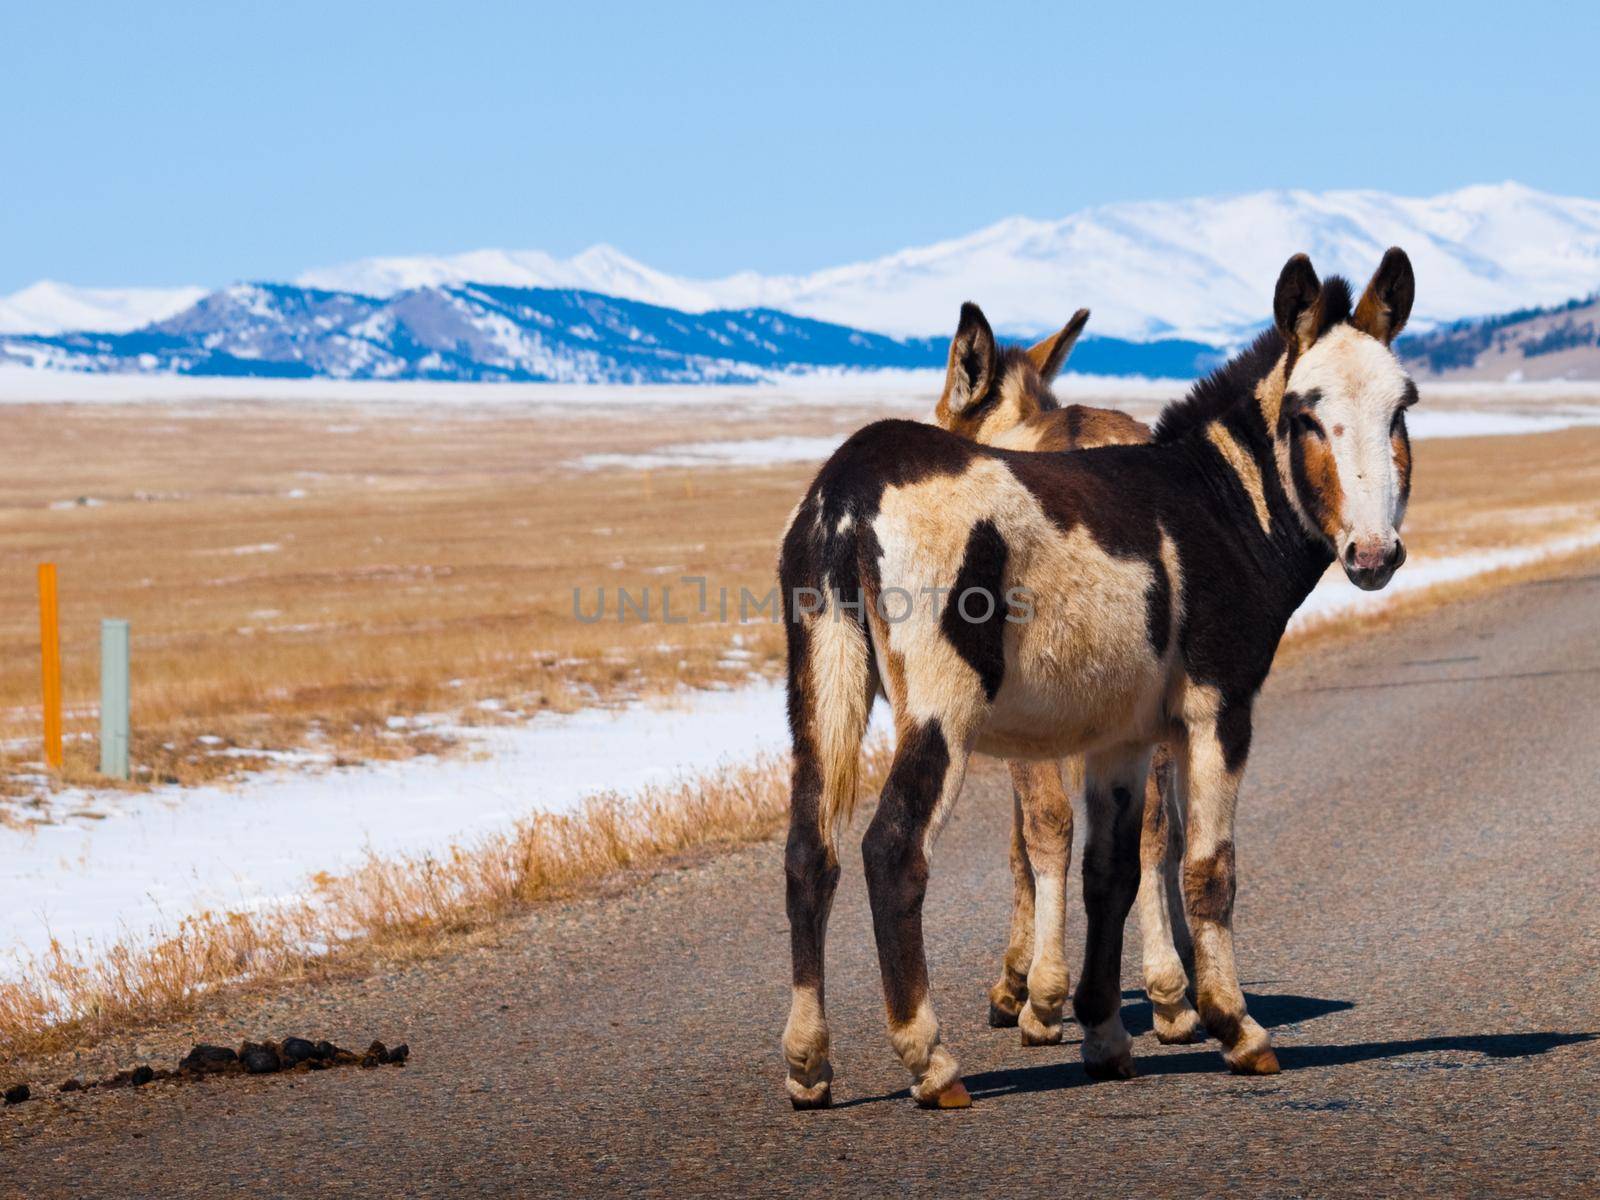 Wild donkey in Colorado.